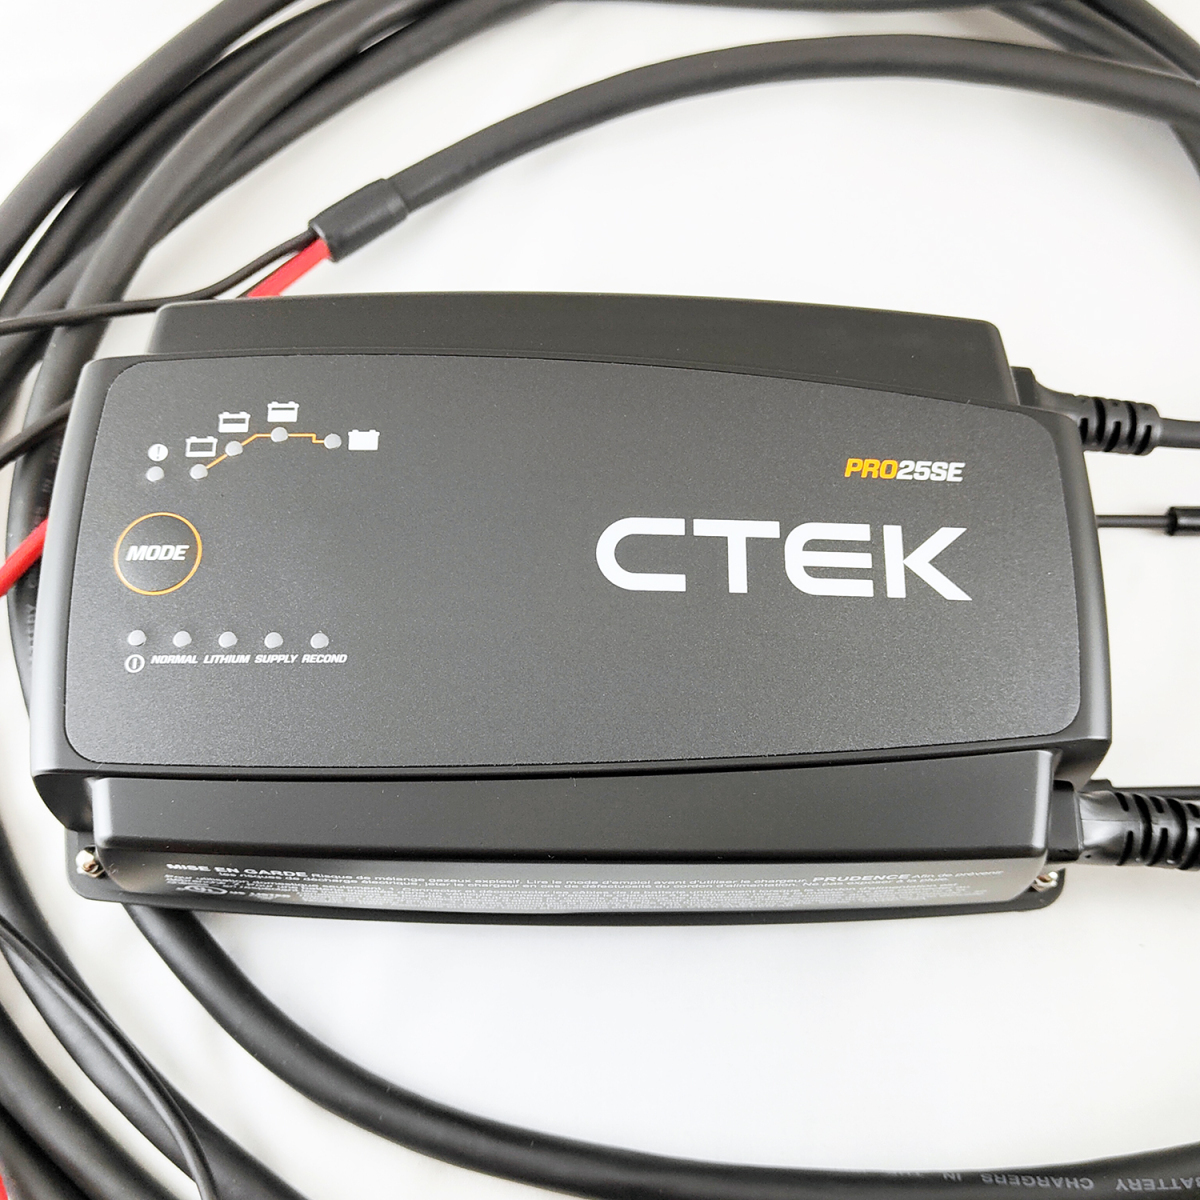 CTEK 業者用 25A PRO25SE NA 「6m充電ケーブル」 急速 充電器 リチウム・バッテリー 対応 日本語取説 40-327 米国市場 シーテック_画像3